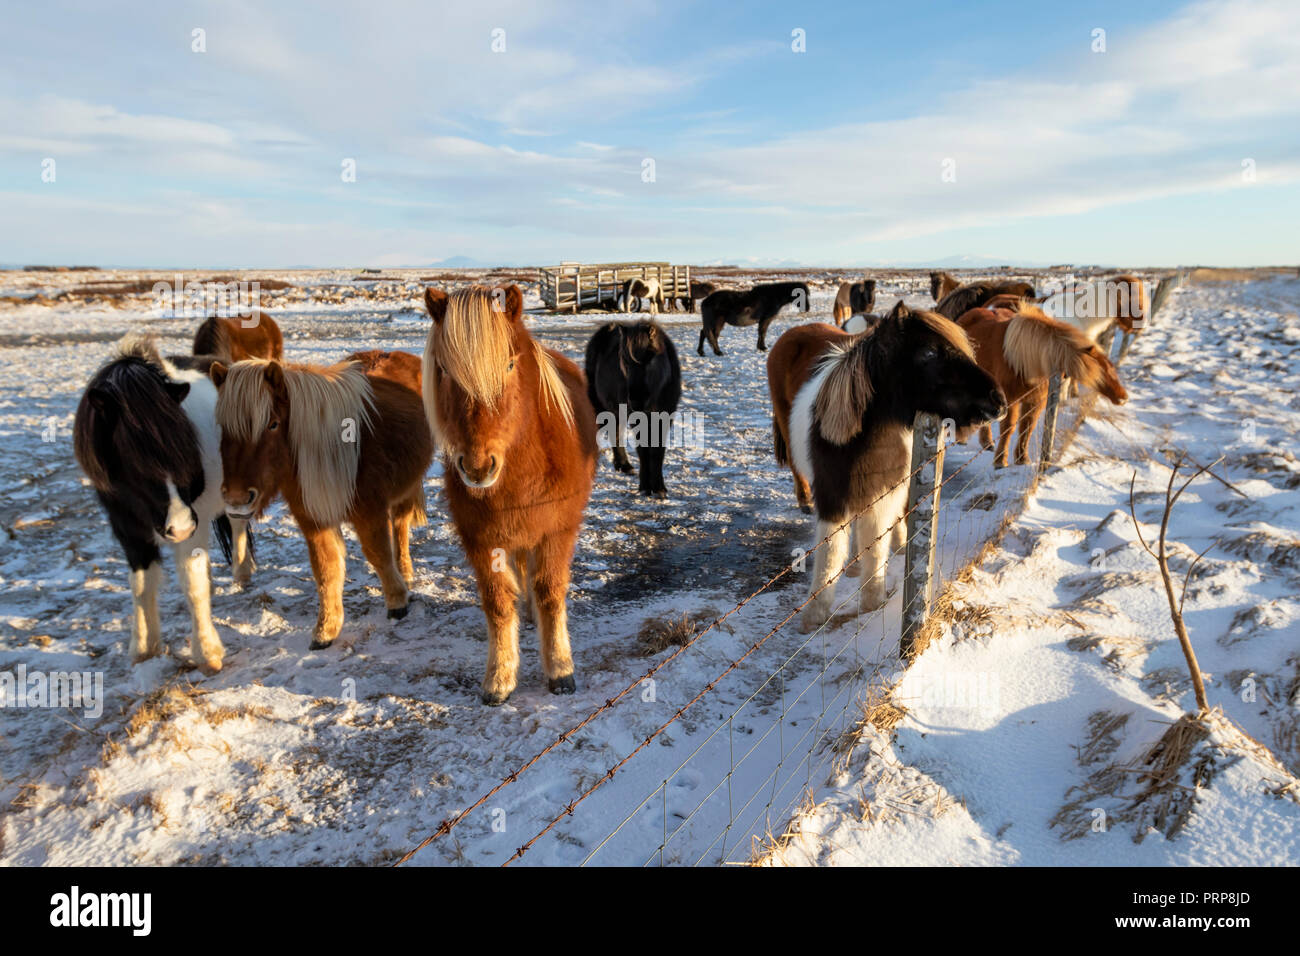 Un gruppo di cavalli islandesi dietro un filo spinato nella neve, Islanda Foto Stock